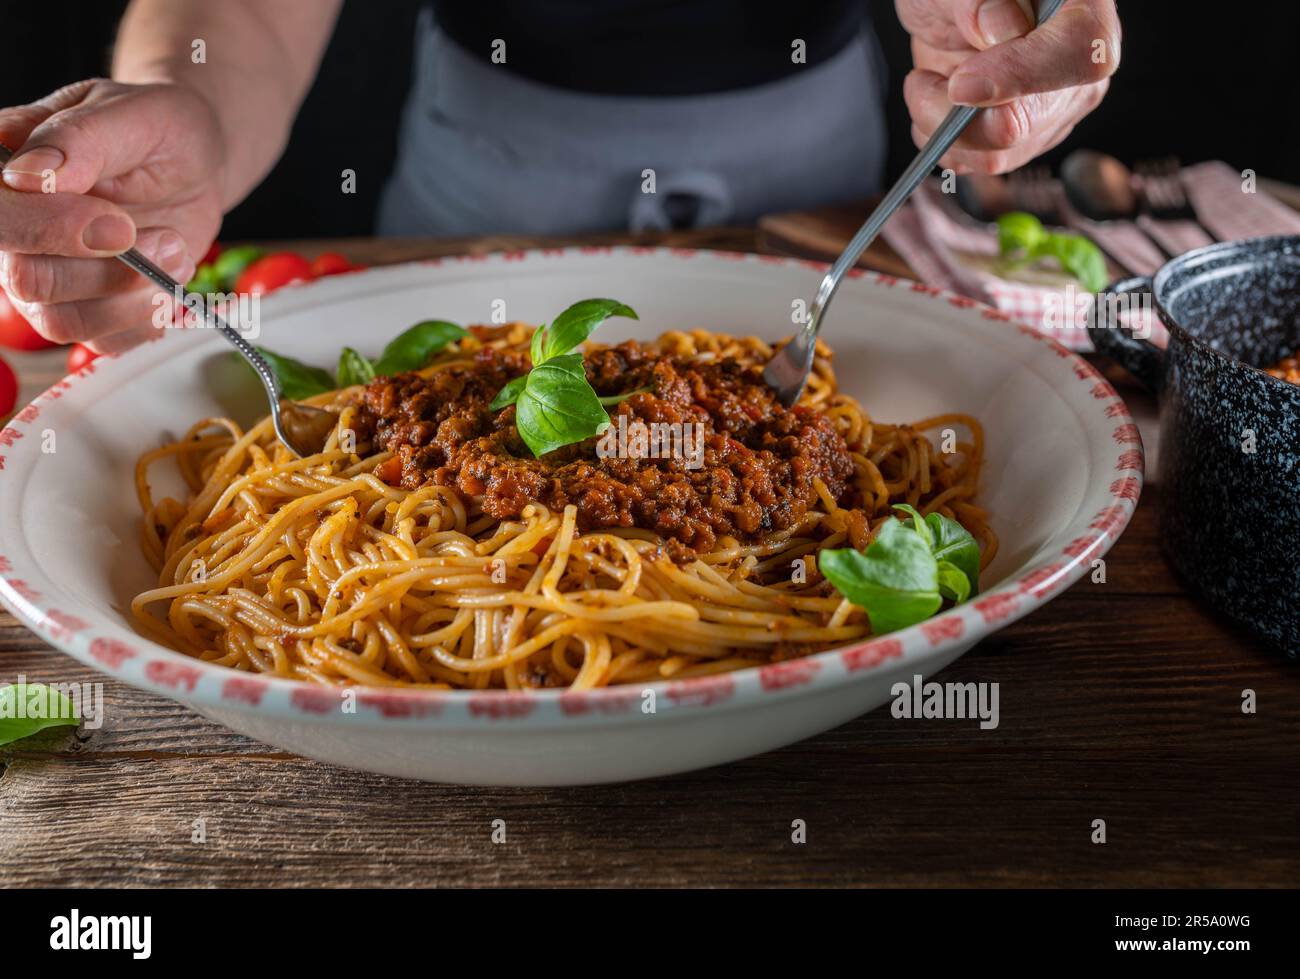 Eine Frau mit Schürze rührt Spaghetti mit Ragu alla Bolognese in einer großen Nudelschüssel auf einem Holztisch Stockfoto